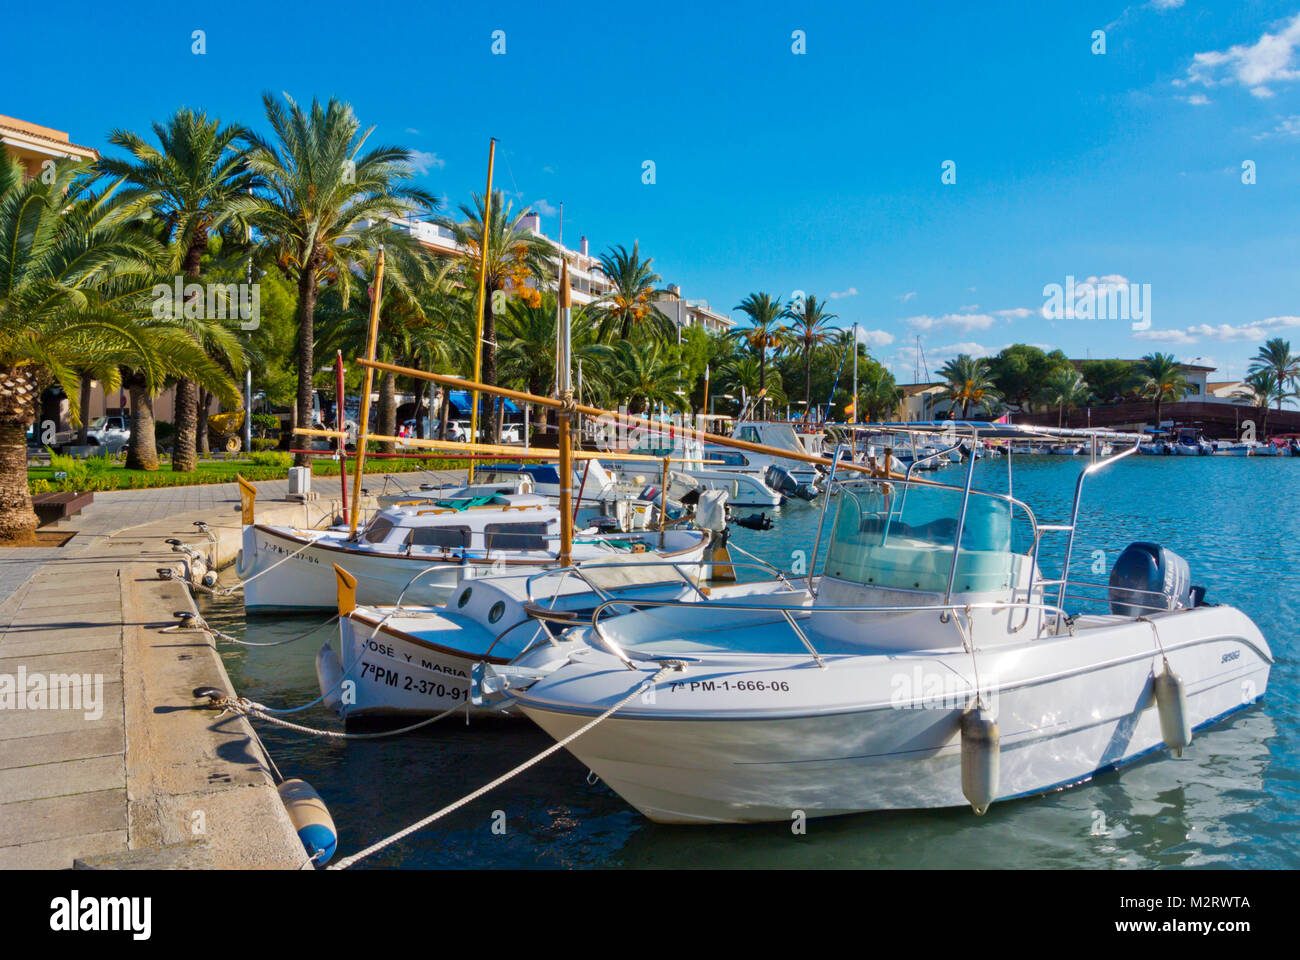 Hafen für private Boote, Passeig Maritim, Paseo Maritimo, harbourside Promenade, Port d'Alcudia, Mallorca, Balearen, Spanien Stockfoto